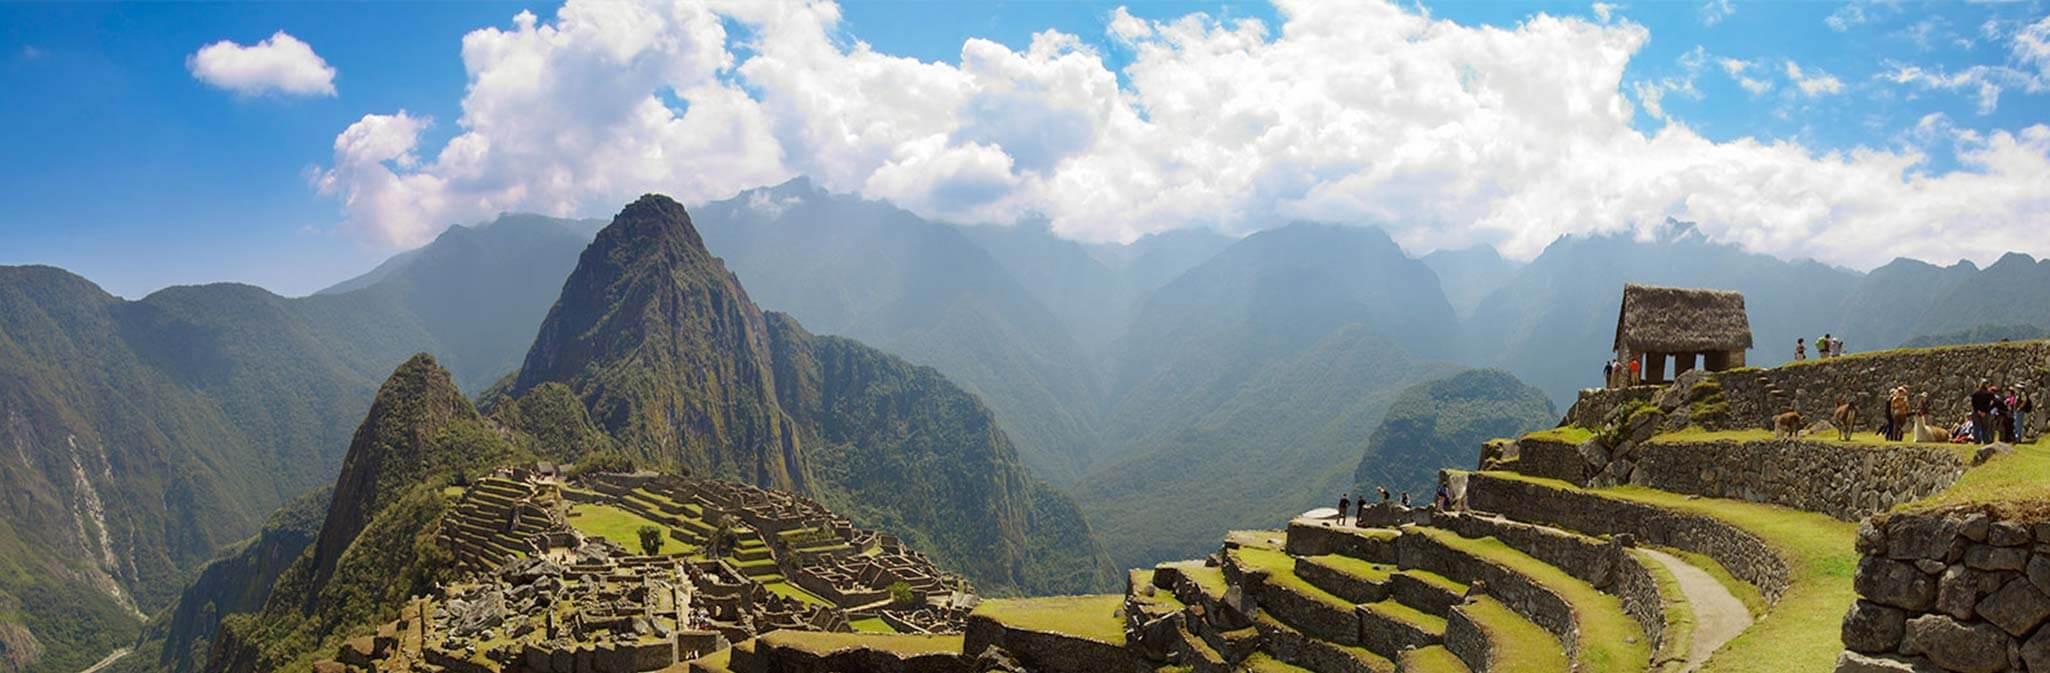 Machu Picchu, points of interest in Peru